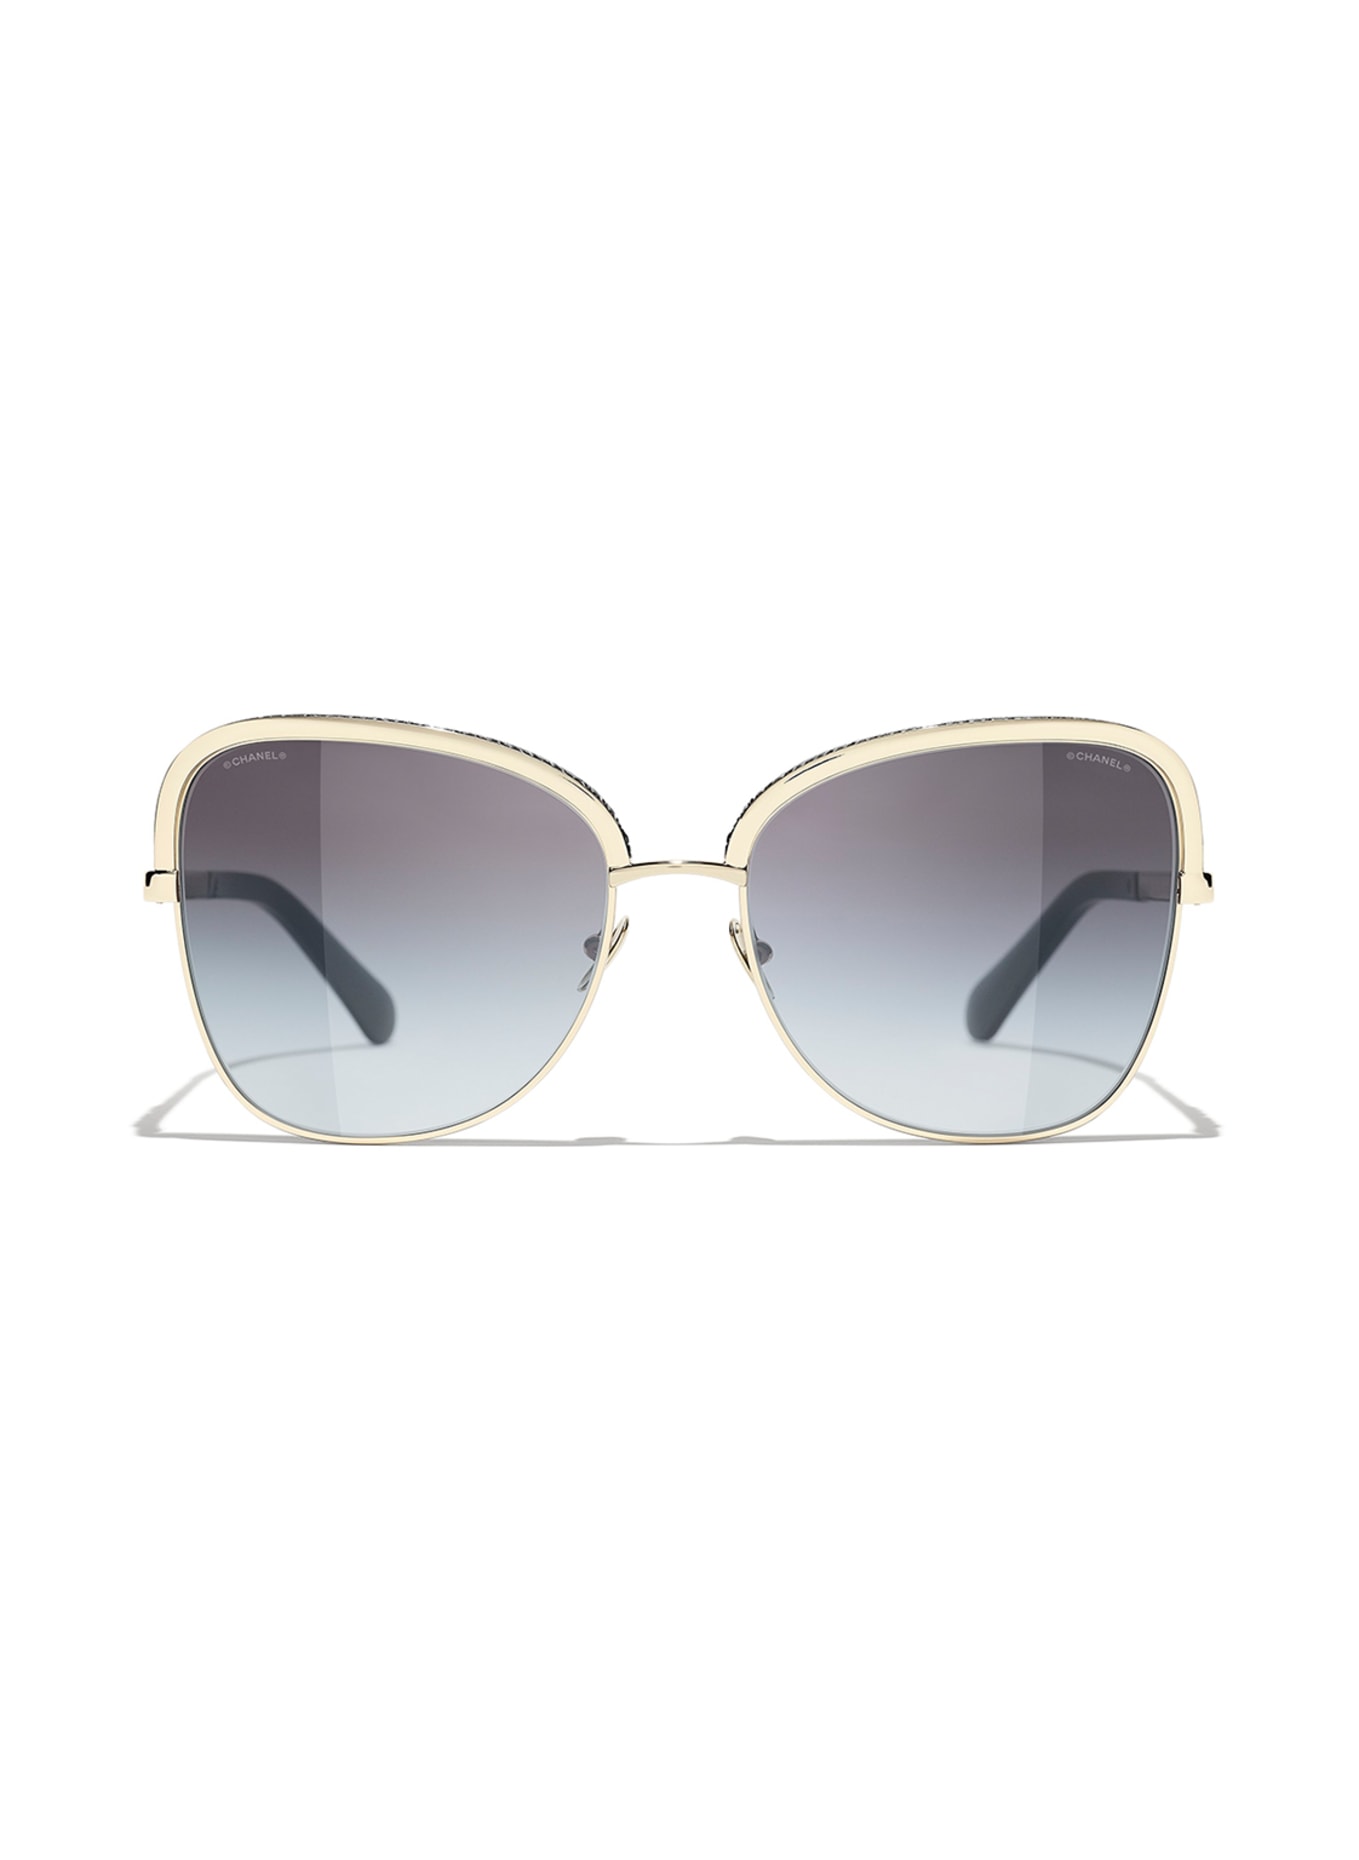 CHANEL Square sunglasses in c395s658 - gold/black gradient